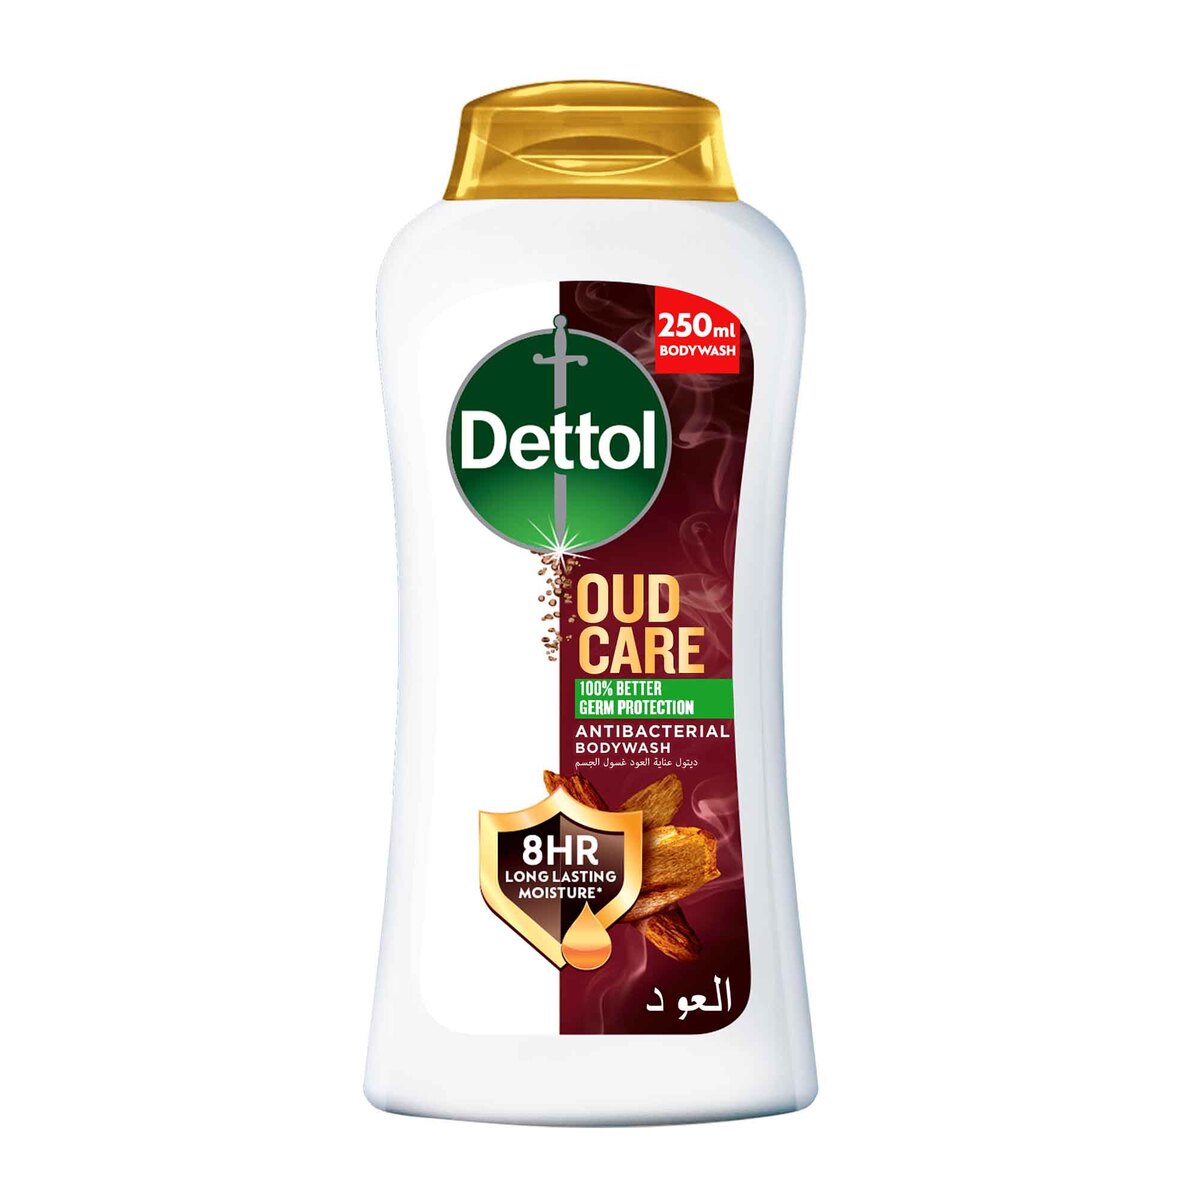 Dettol Oud Care Antibacterial Bodywash 250 ml